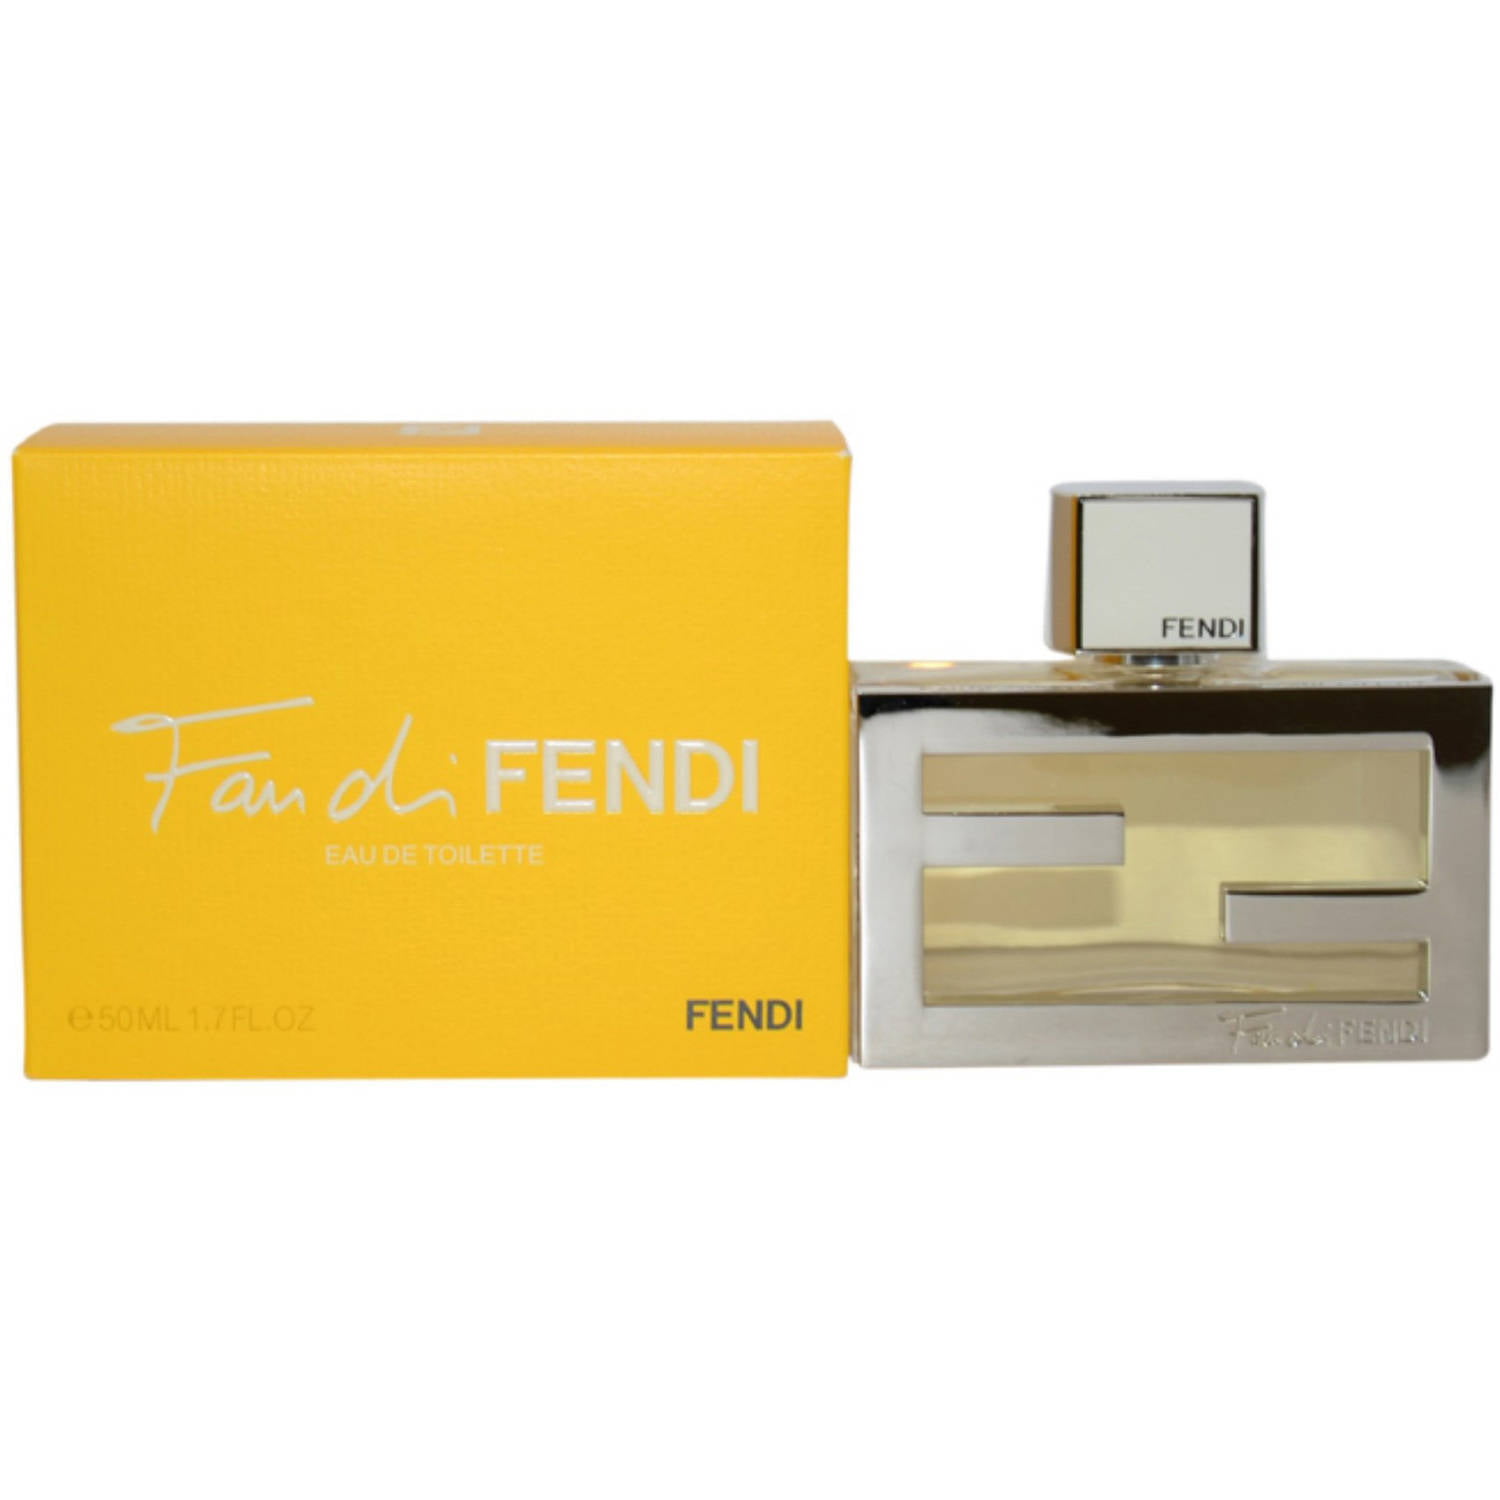 Fan di Fendi by Fendi for Women, 1.7 oz - Walmart.com